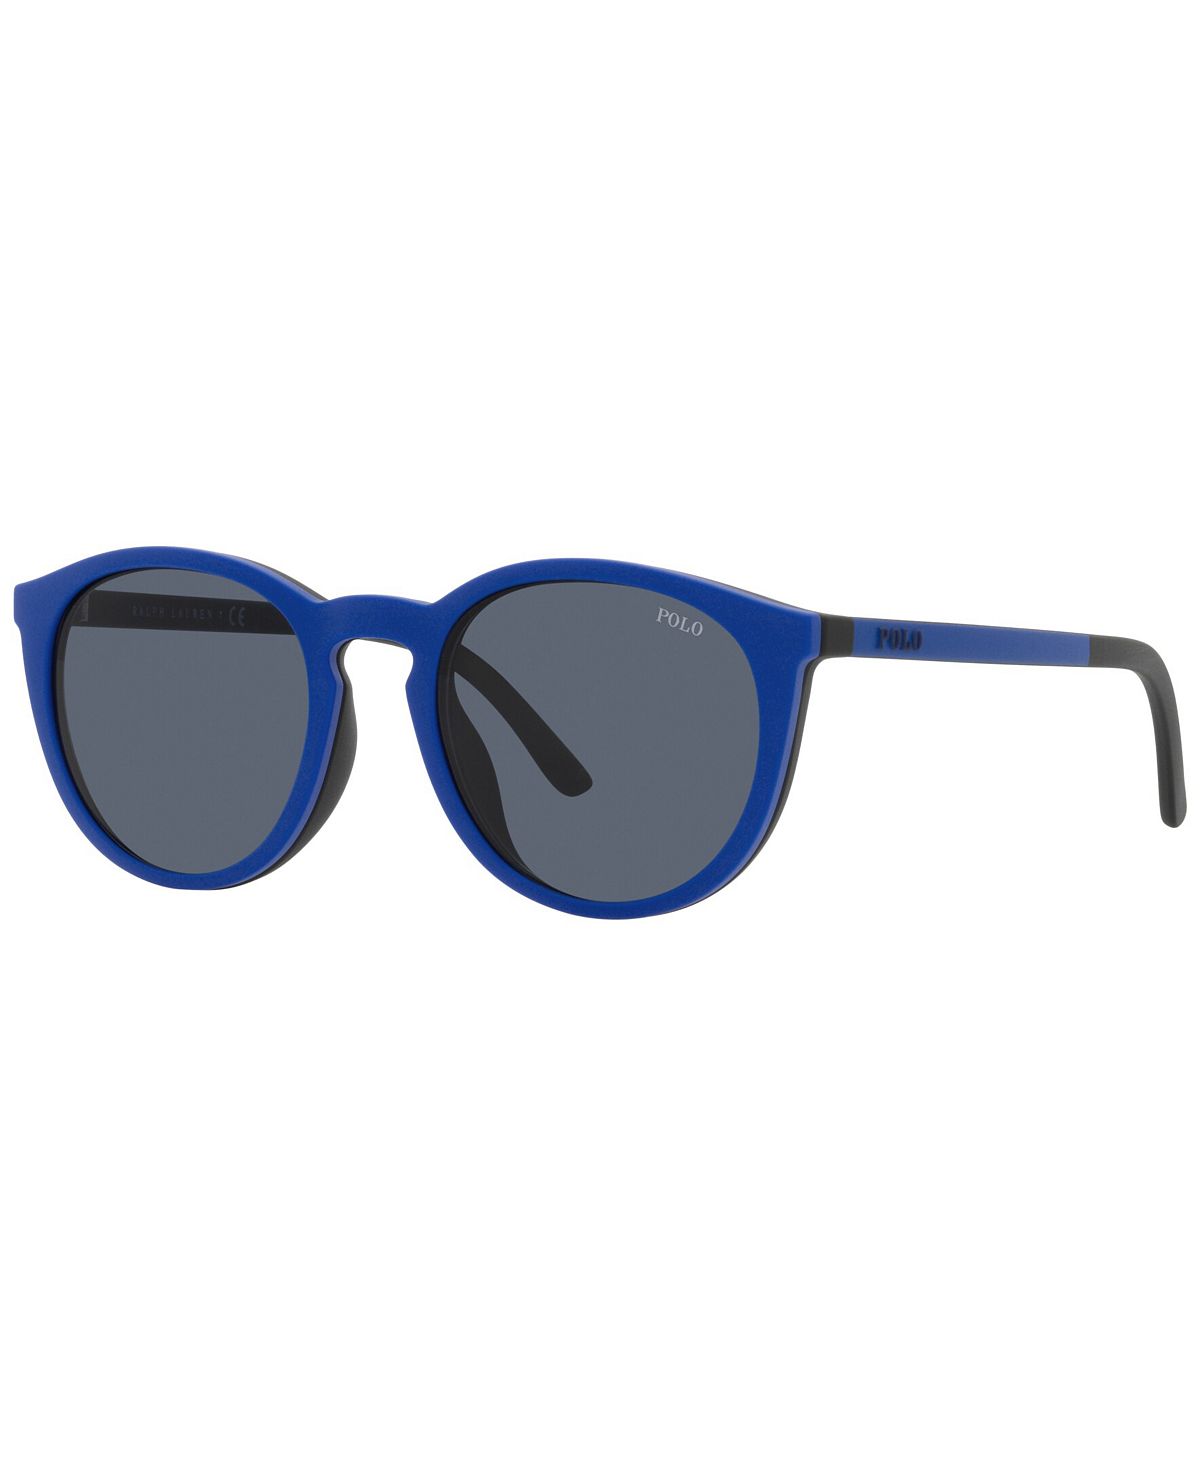 Мужские солнцезащитные очки, ph4183u 50 Polo Ralph Lauren, мульти